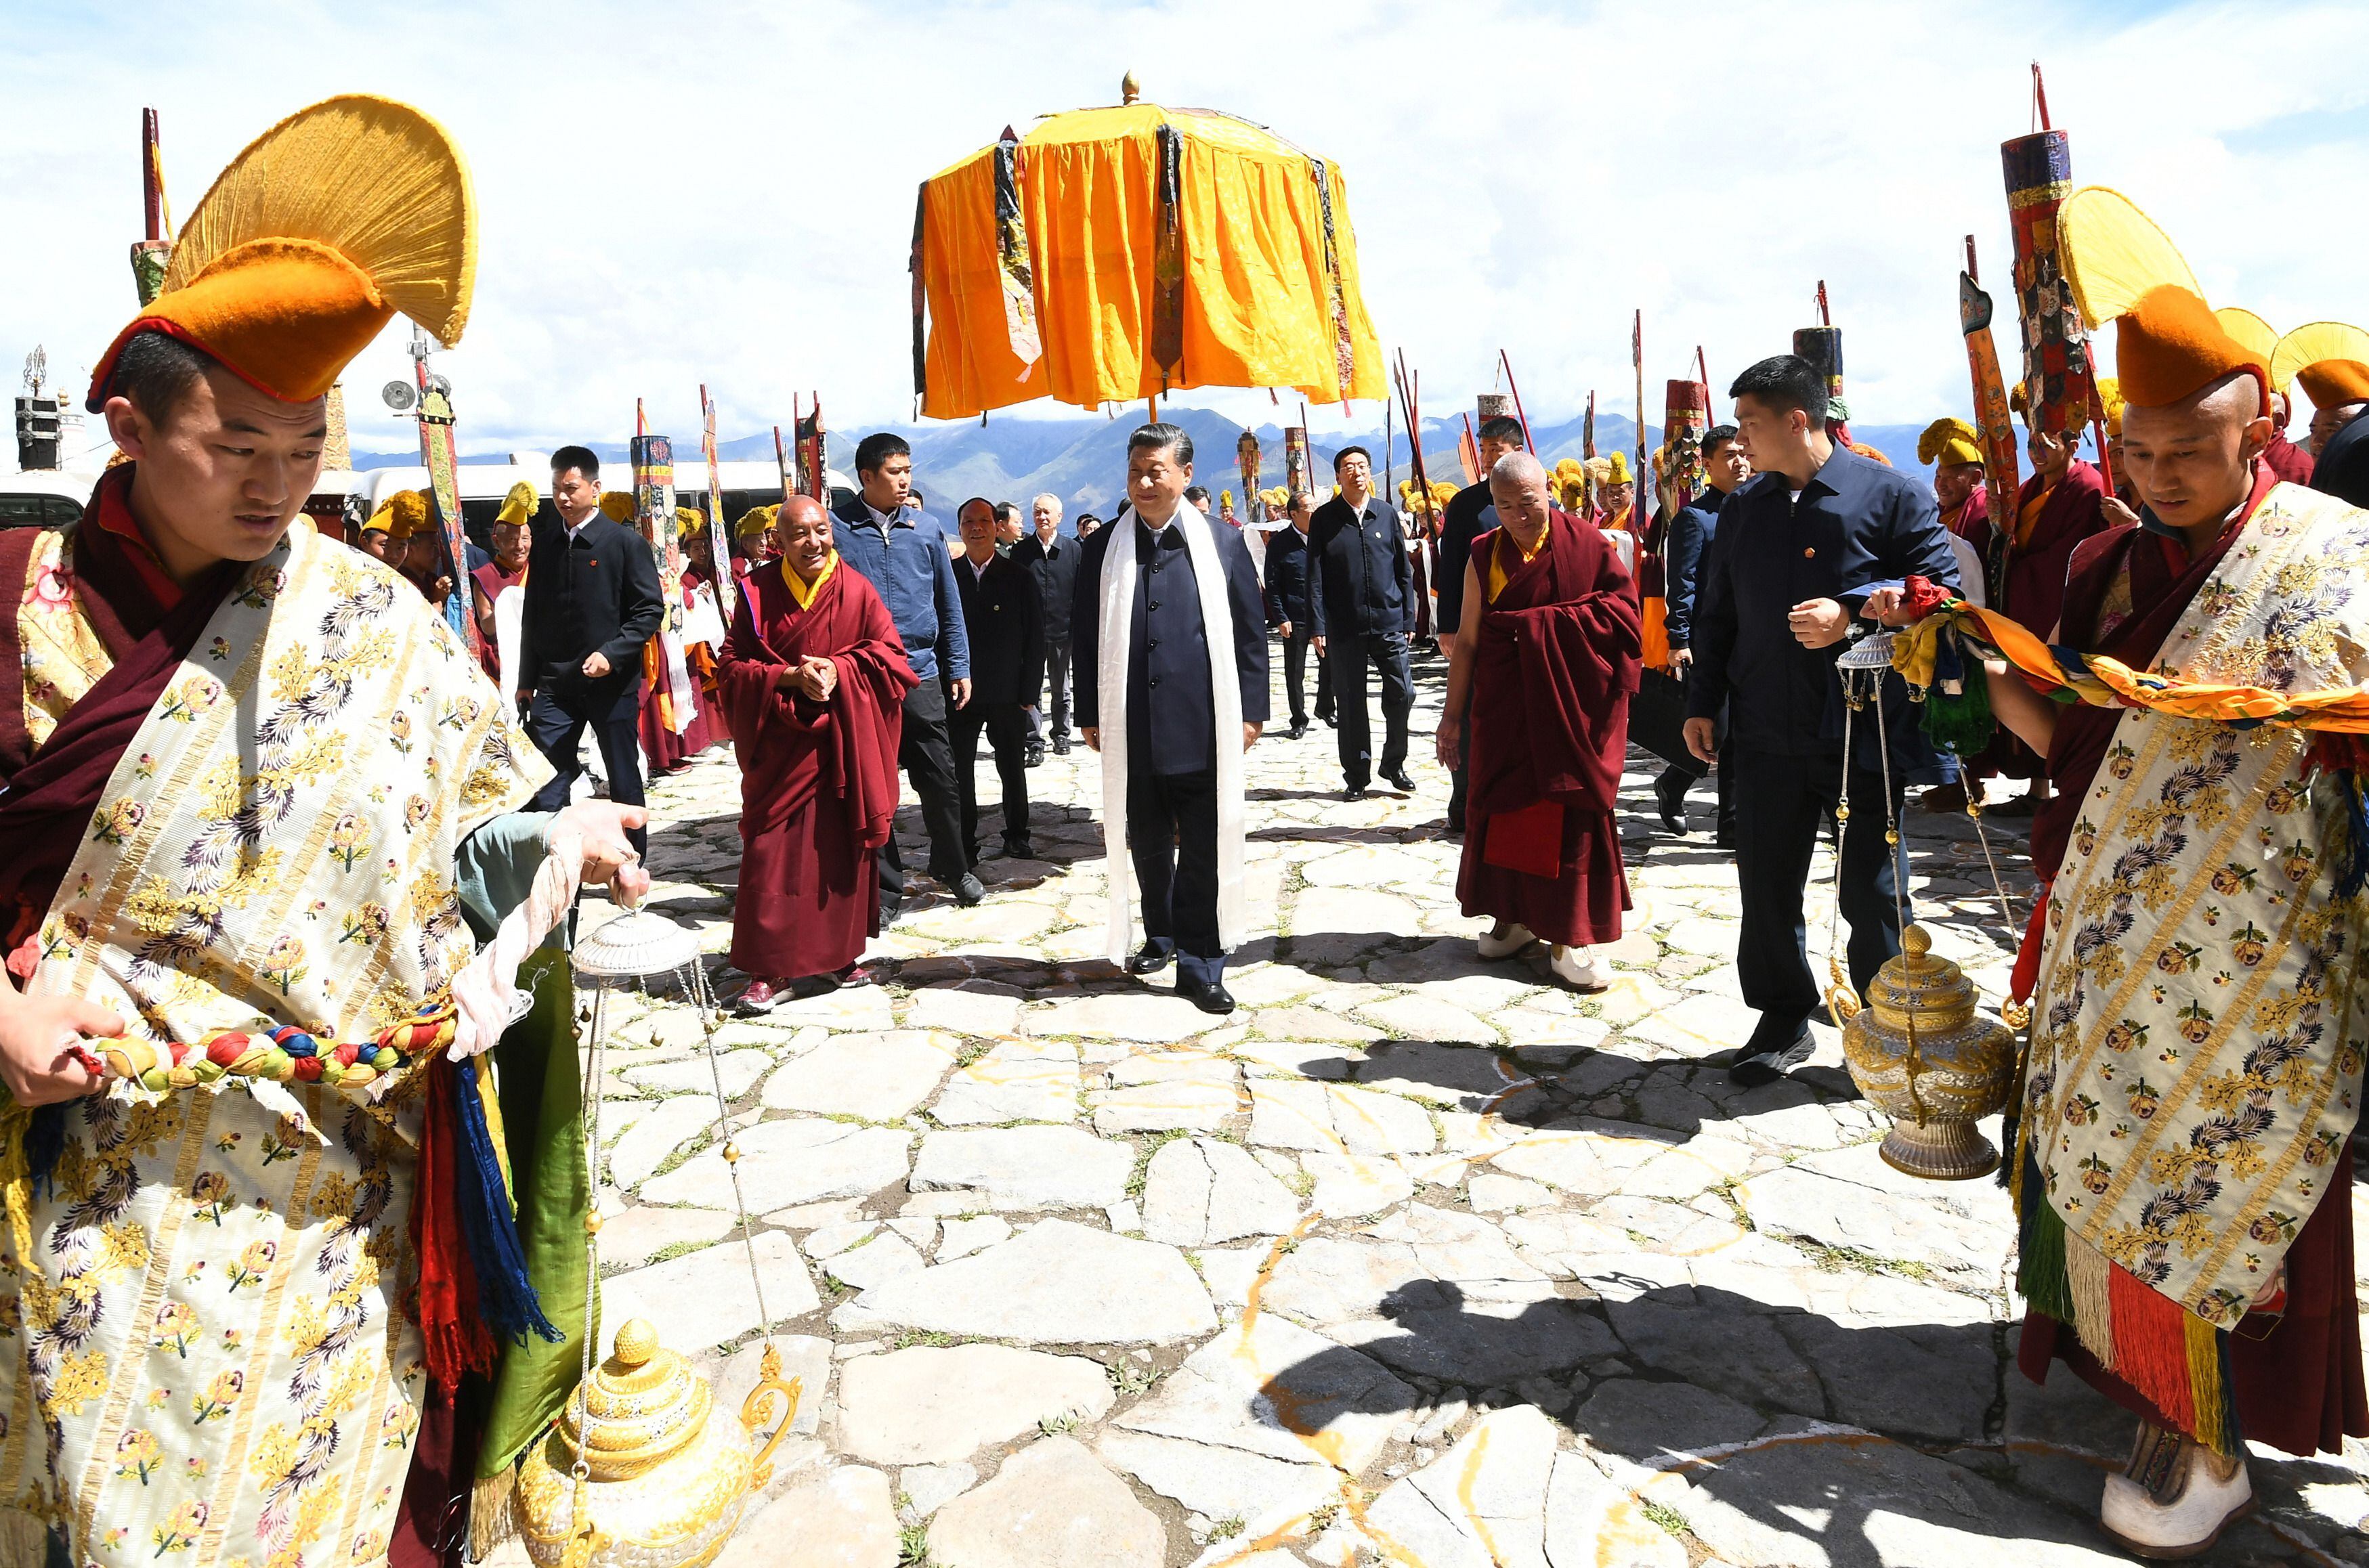 (210723) -- LHASA, 23 julio, 2021 (Xinhua) -- El presidente chino, Xi Jinping, también secretario general del Comité Central del Partido Comunista de China y presidente de la Comisión Militar Central, inspecciona el monasterio Drepung localizado en los suburbios occidentales de Lhasa, en la región autónoma del Tíbet, en el suroeste de China, el 22 de julio de 2021. Xi visitó la región autónoma del Tíbet entre el miércoles y el viernes. El mandatario extendió sus felicitaciones por el 70º aniversario de la liberación pacífica del Tíbet, y visitó a funcionarios y gente común de varios grupos étnicos. (Xinhua/Xie Huanchi) (da) (vf)